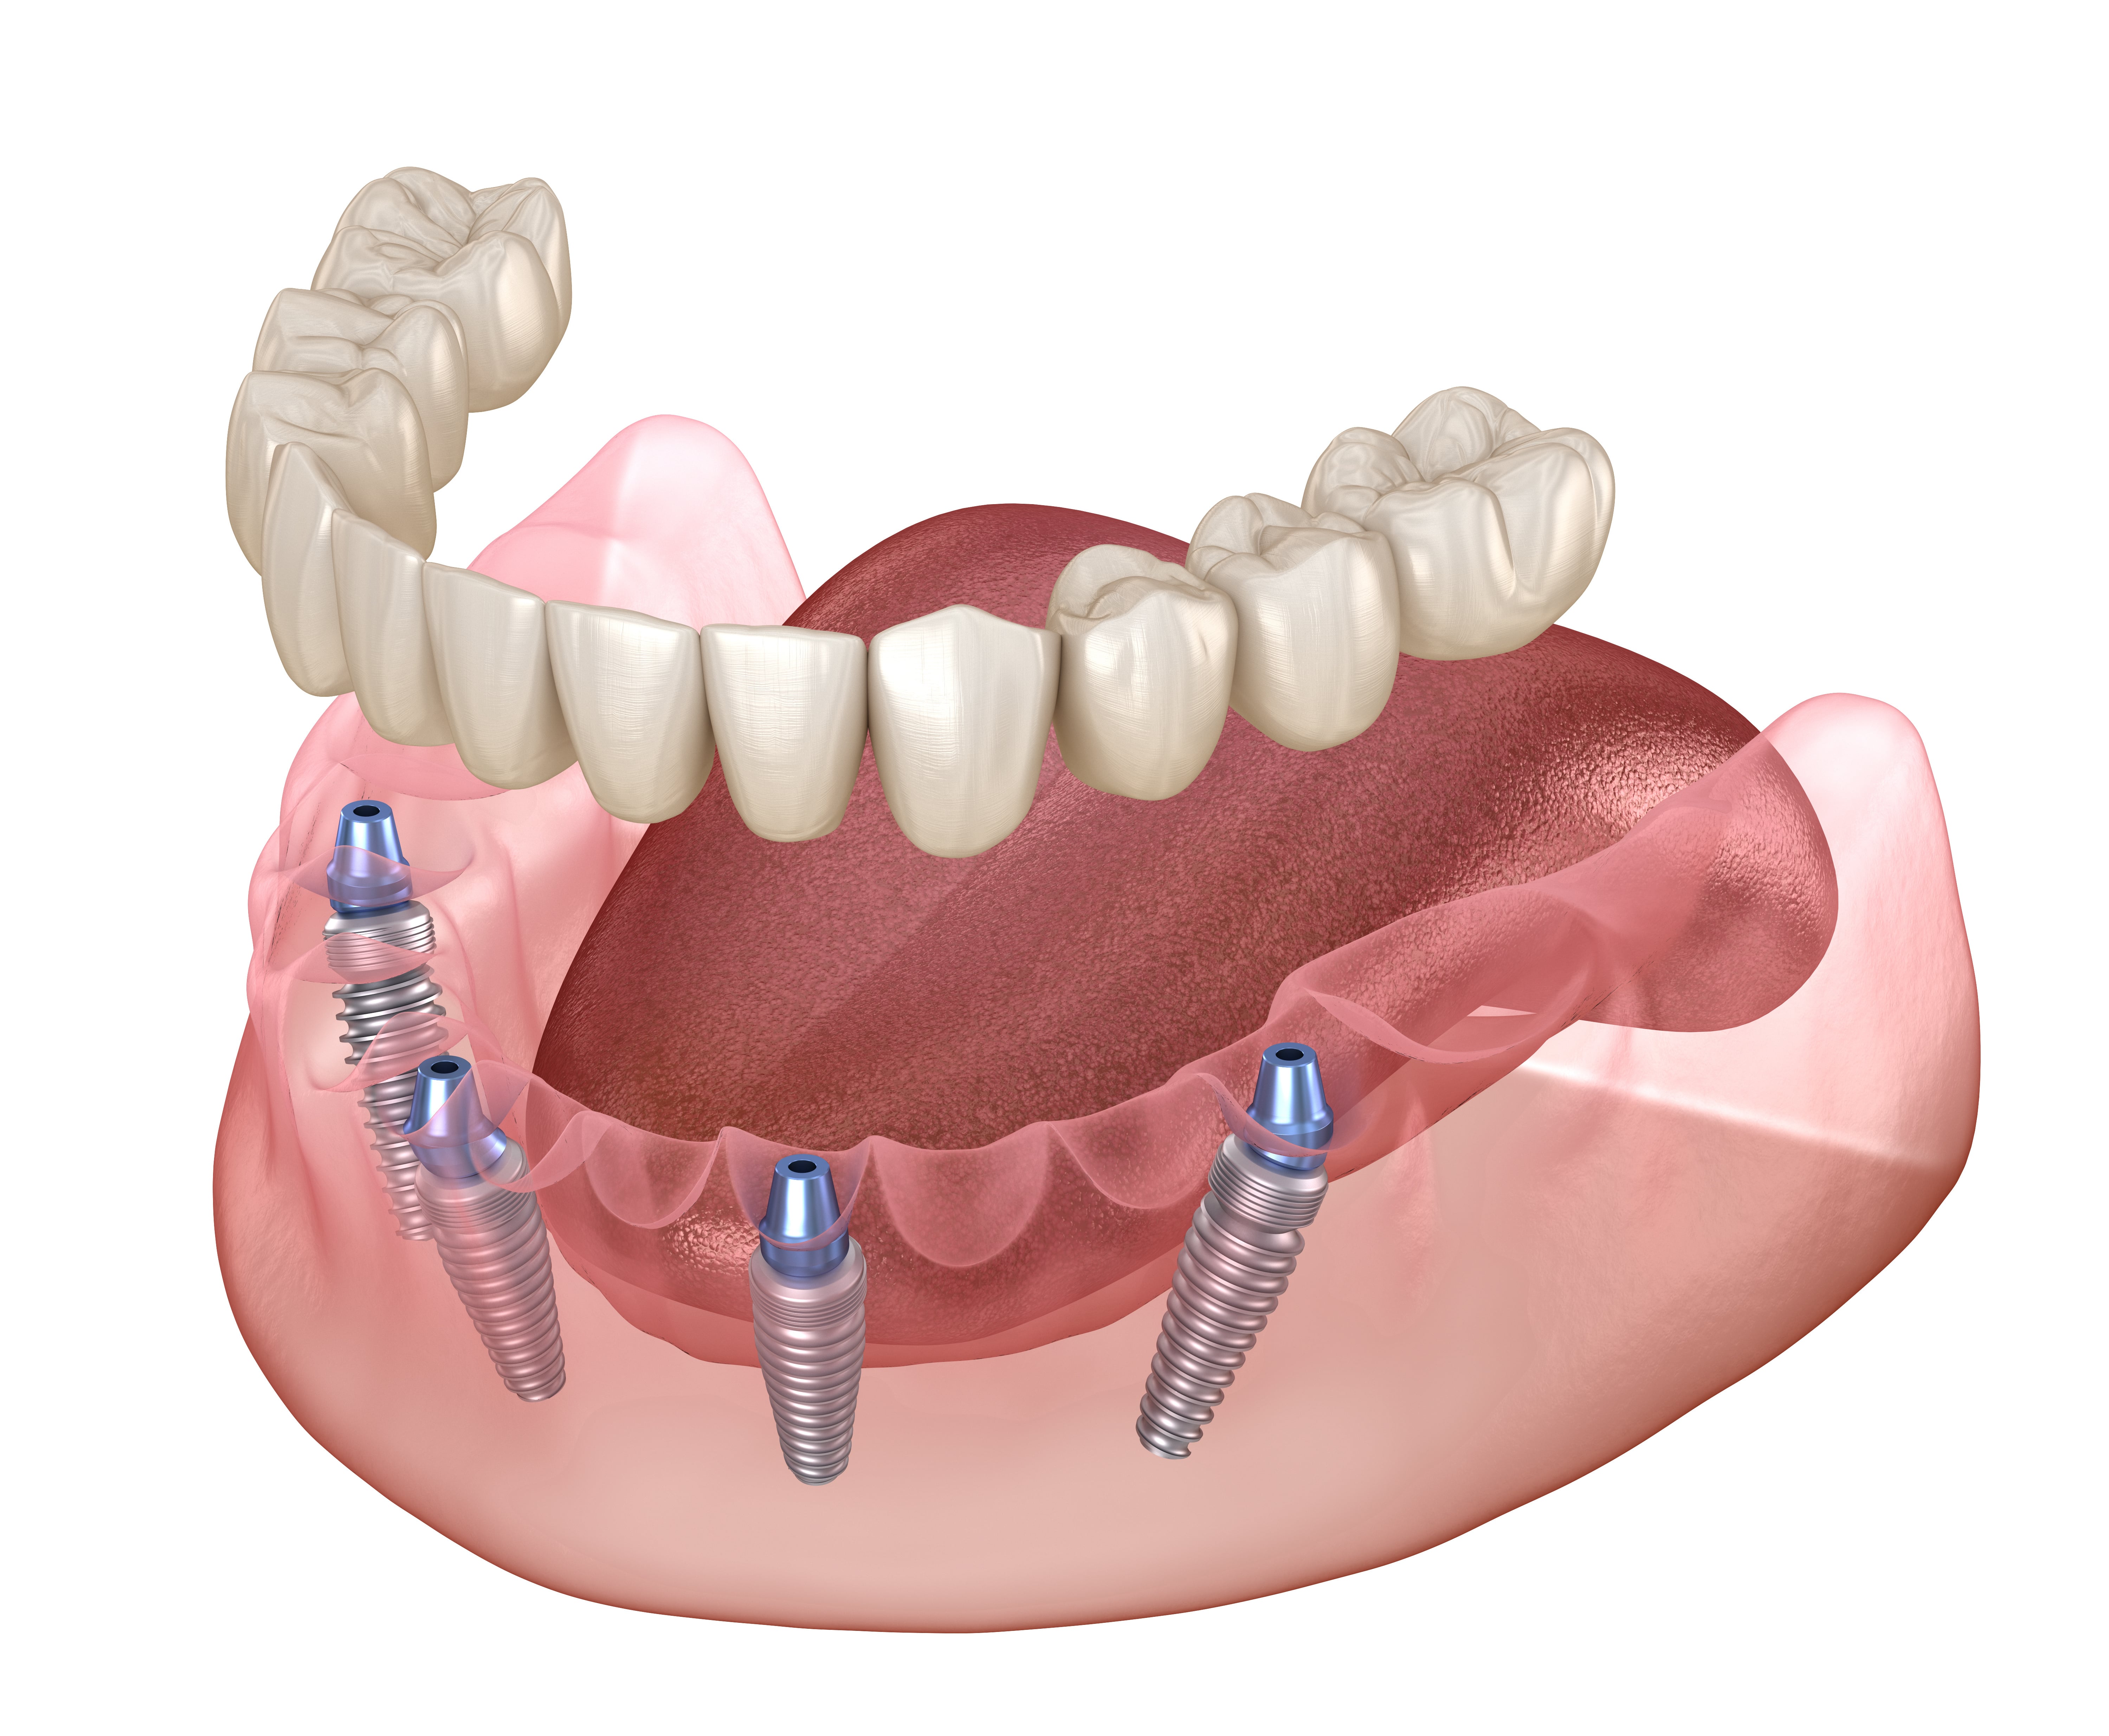 Имплантация зубов all on 6. All on 4 имплантация Нобель. Имплантация зубов по технологии «all on 4» верхней.